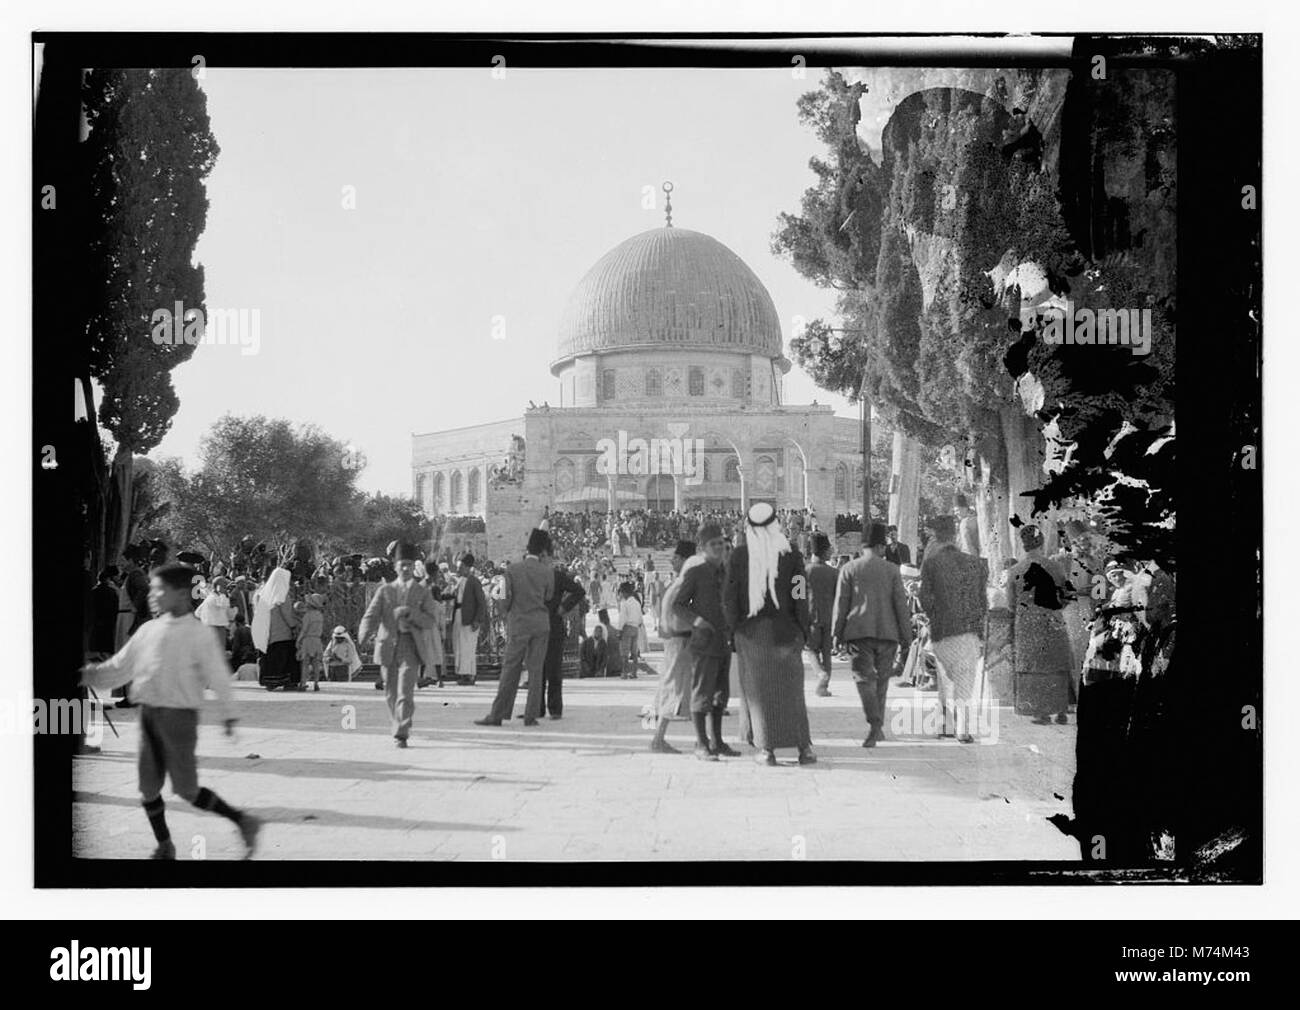 Beerdigung von König Hussein, Jerusalem, Moschee von Omar (d. h., felsendom) LOC 13455 matpc. Stockfoto